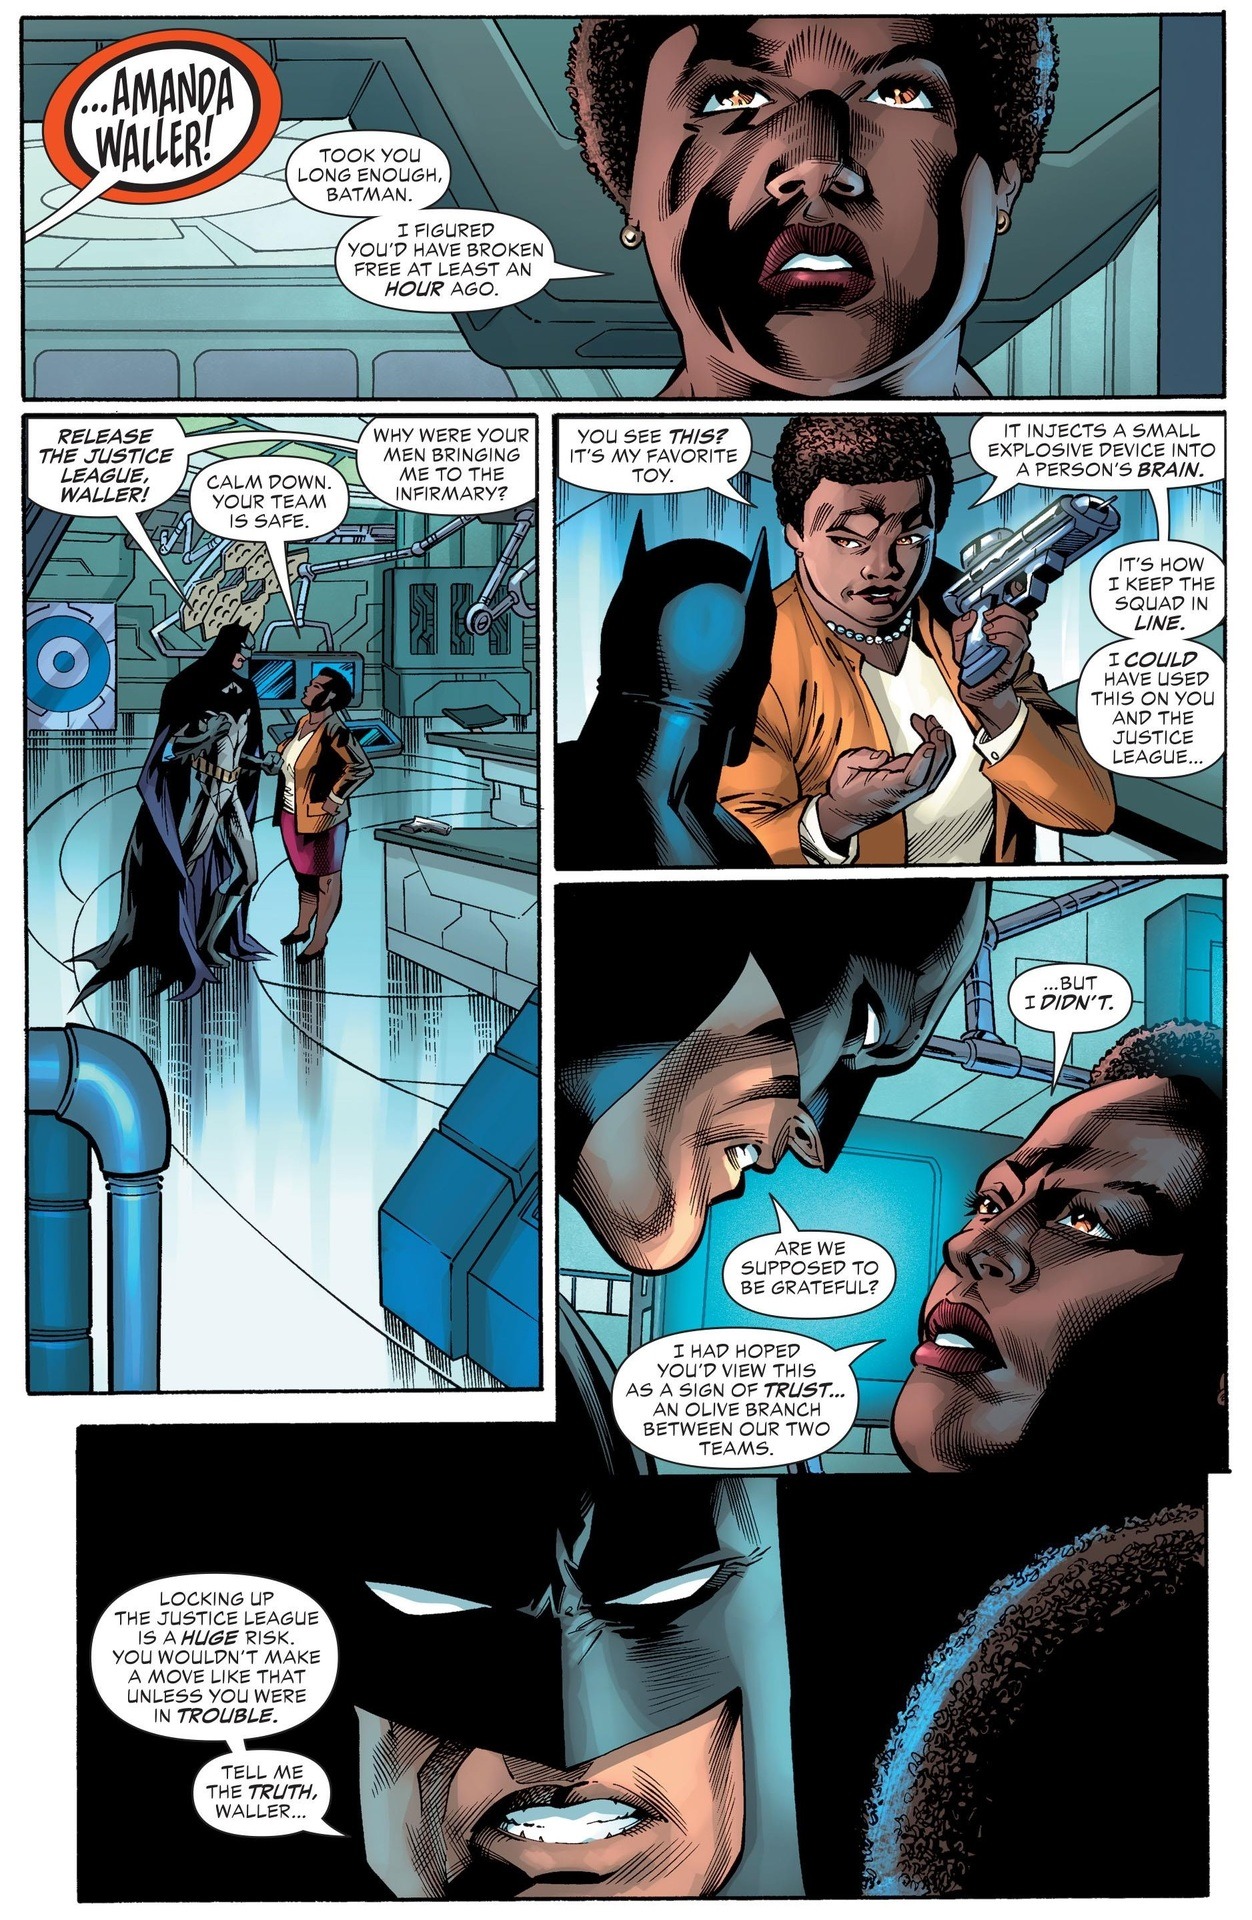 Batman vs. Amanda Waller. [from Justice League vs....